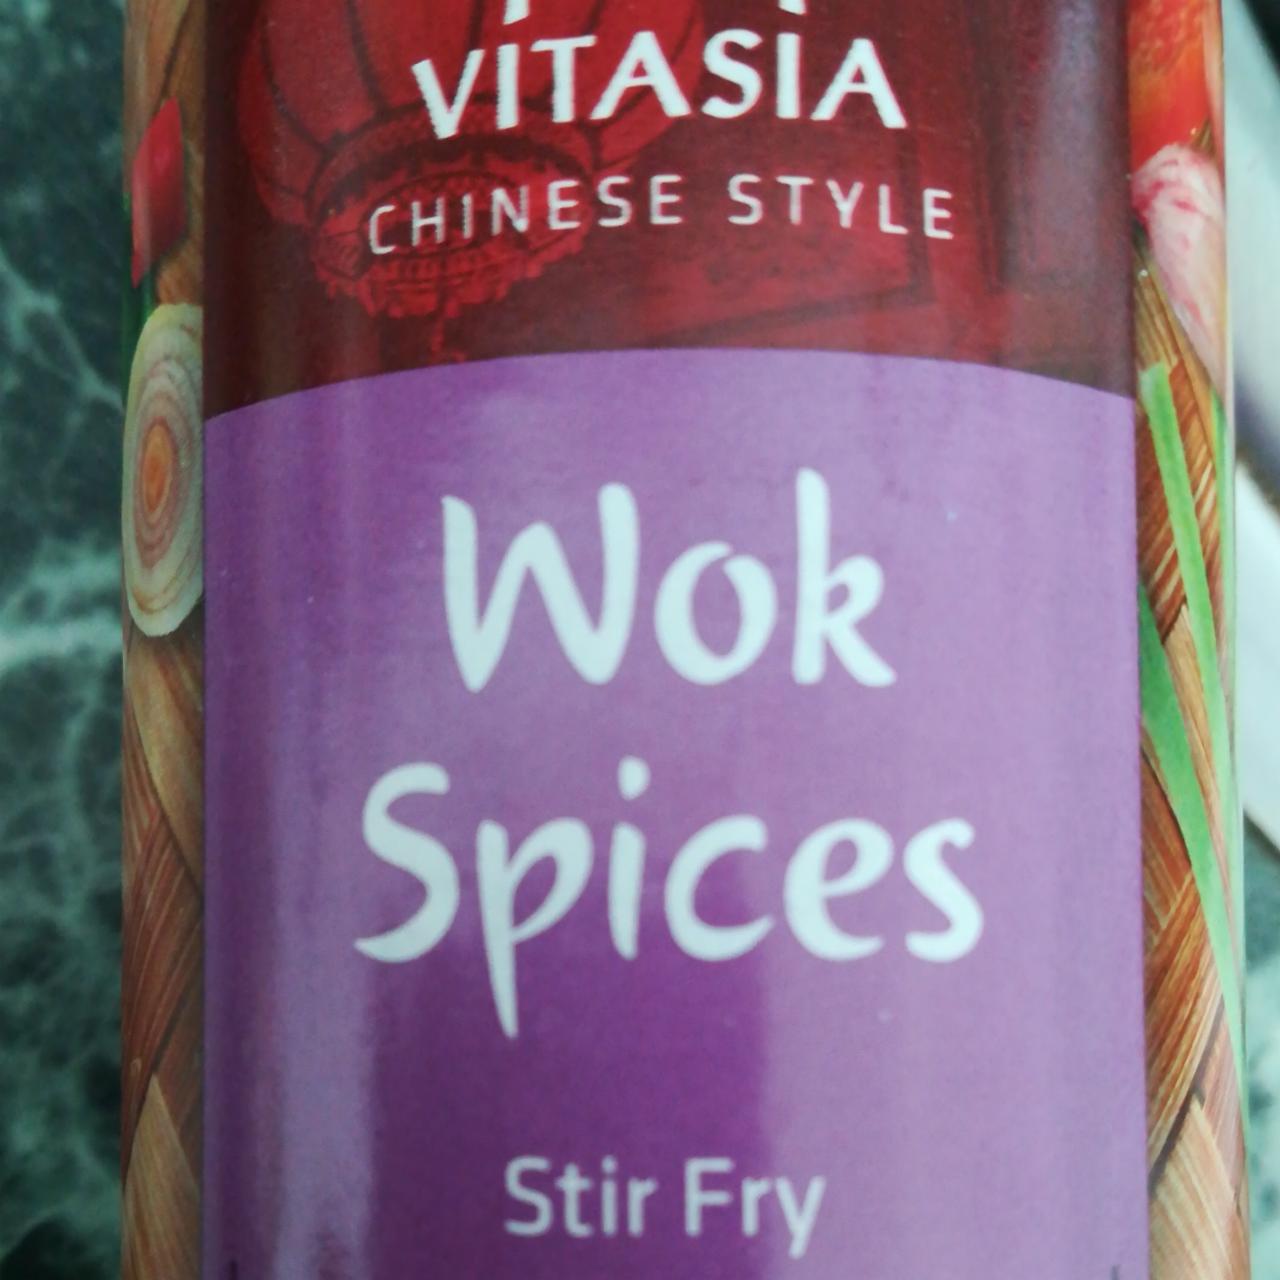 Fotografie - Wok Spices Stir Fry Vitasia